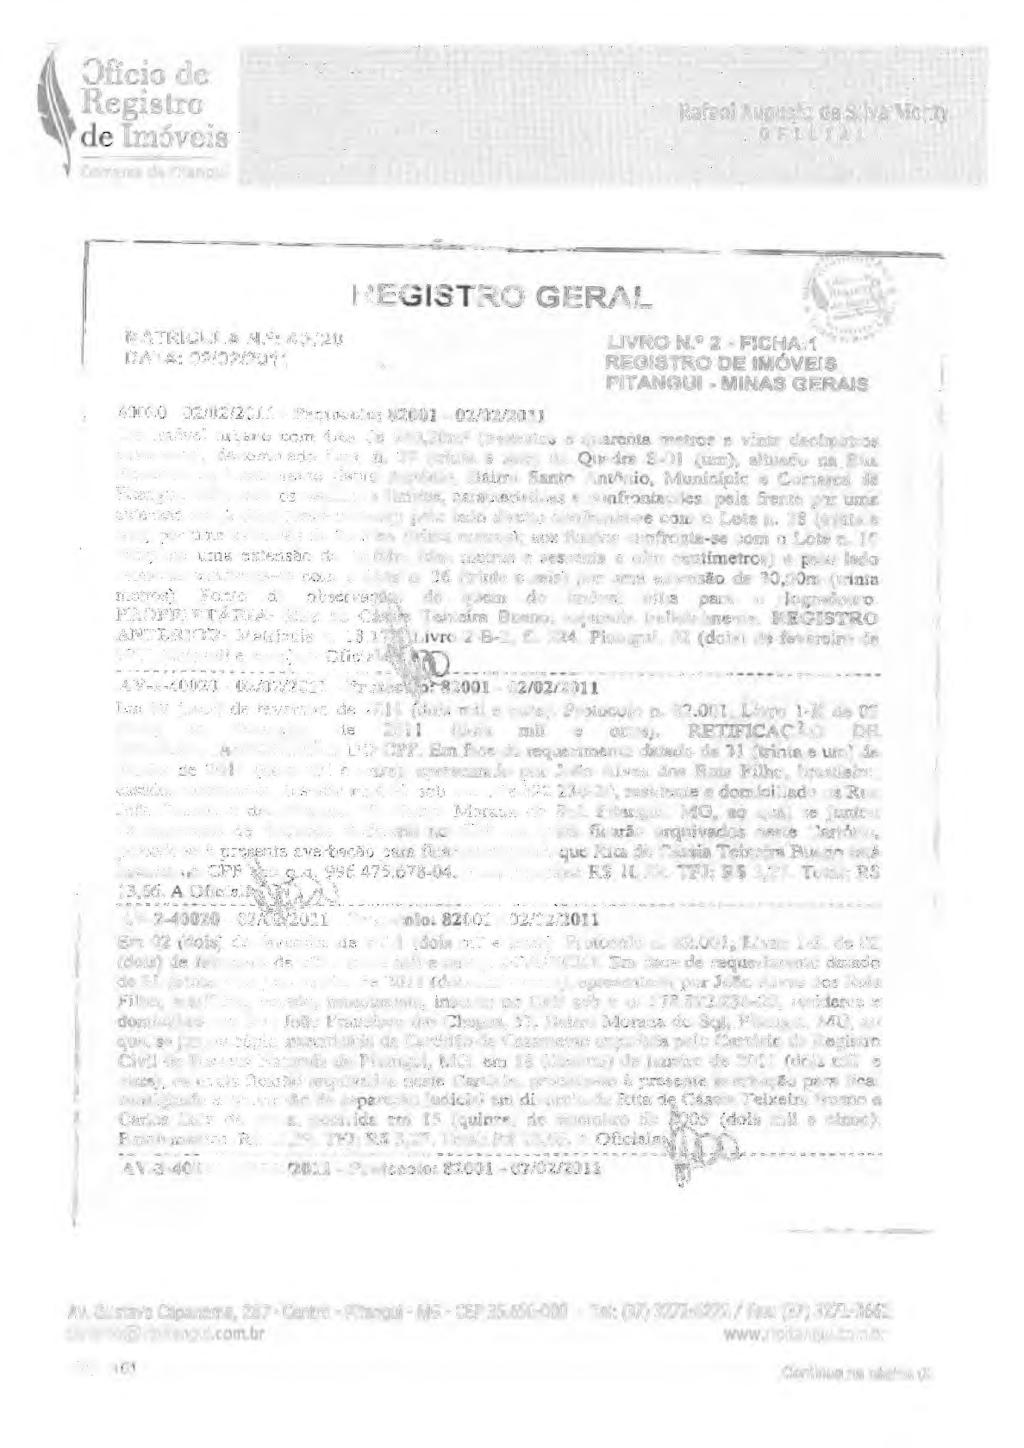 Ofício de de ln1óveis Rafael Augusto da Silva Monty OFICIA- I MATRICULA N. 0 : 40020 DATA: 02/02/2011... LIVRO N.